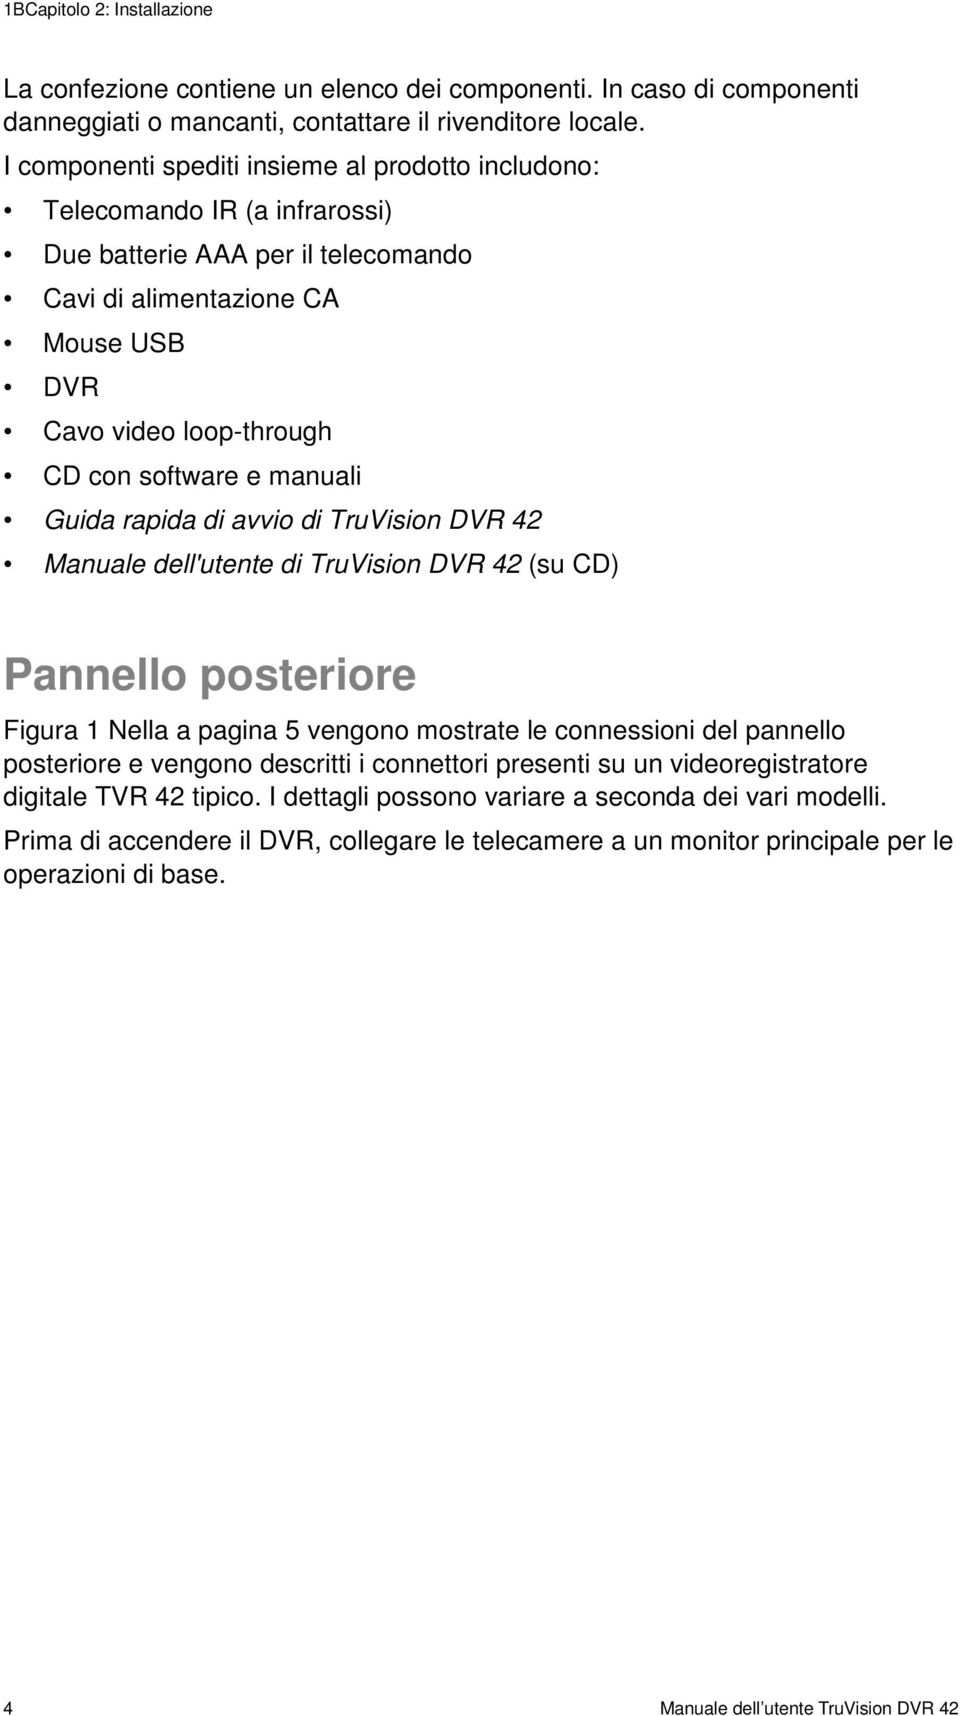 manuali Guida rapida di avvio di TruVision DVR 42 Manuale dell'utente di TruVision DVR 42 (su CD) Pannello posteriore Figura 1 Nella a pagina 5 vengono mostrate le connessioni del pannello posteriore